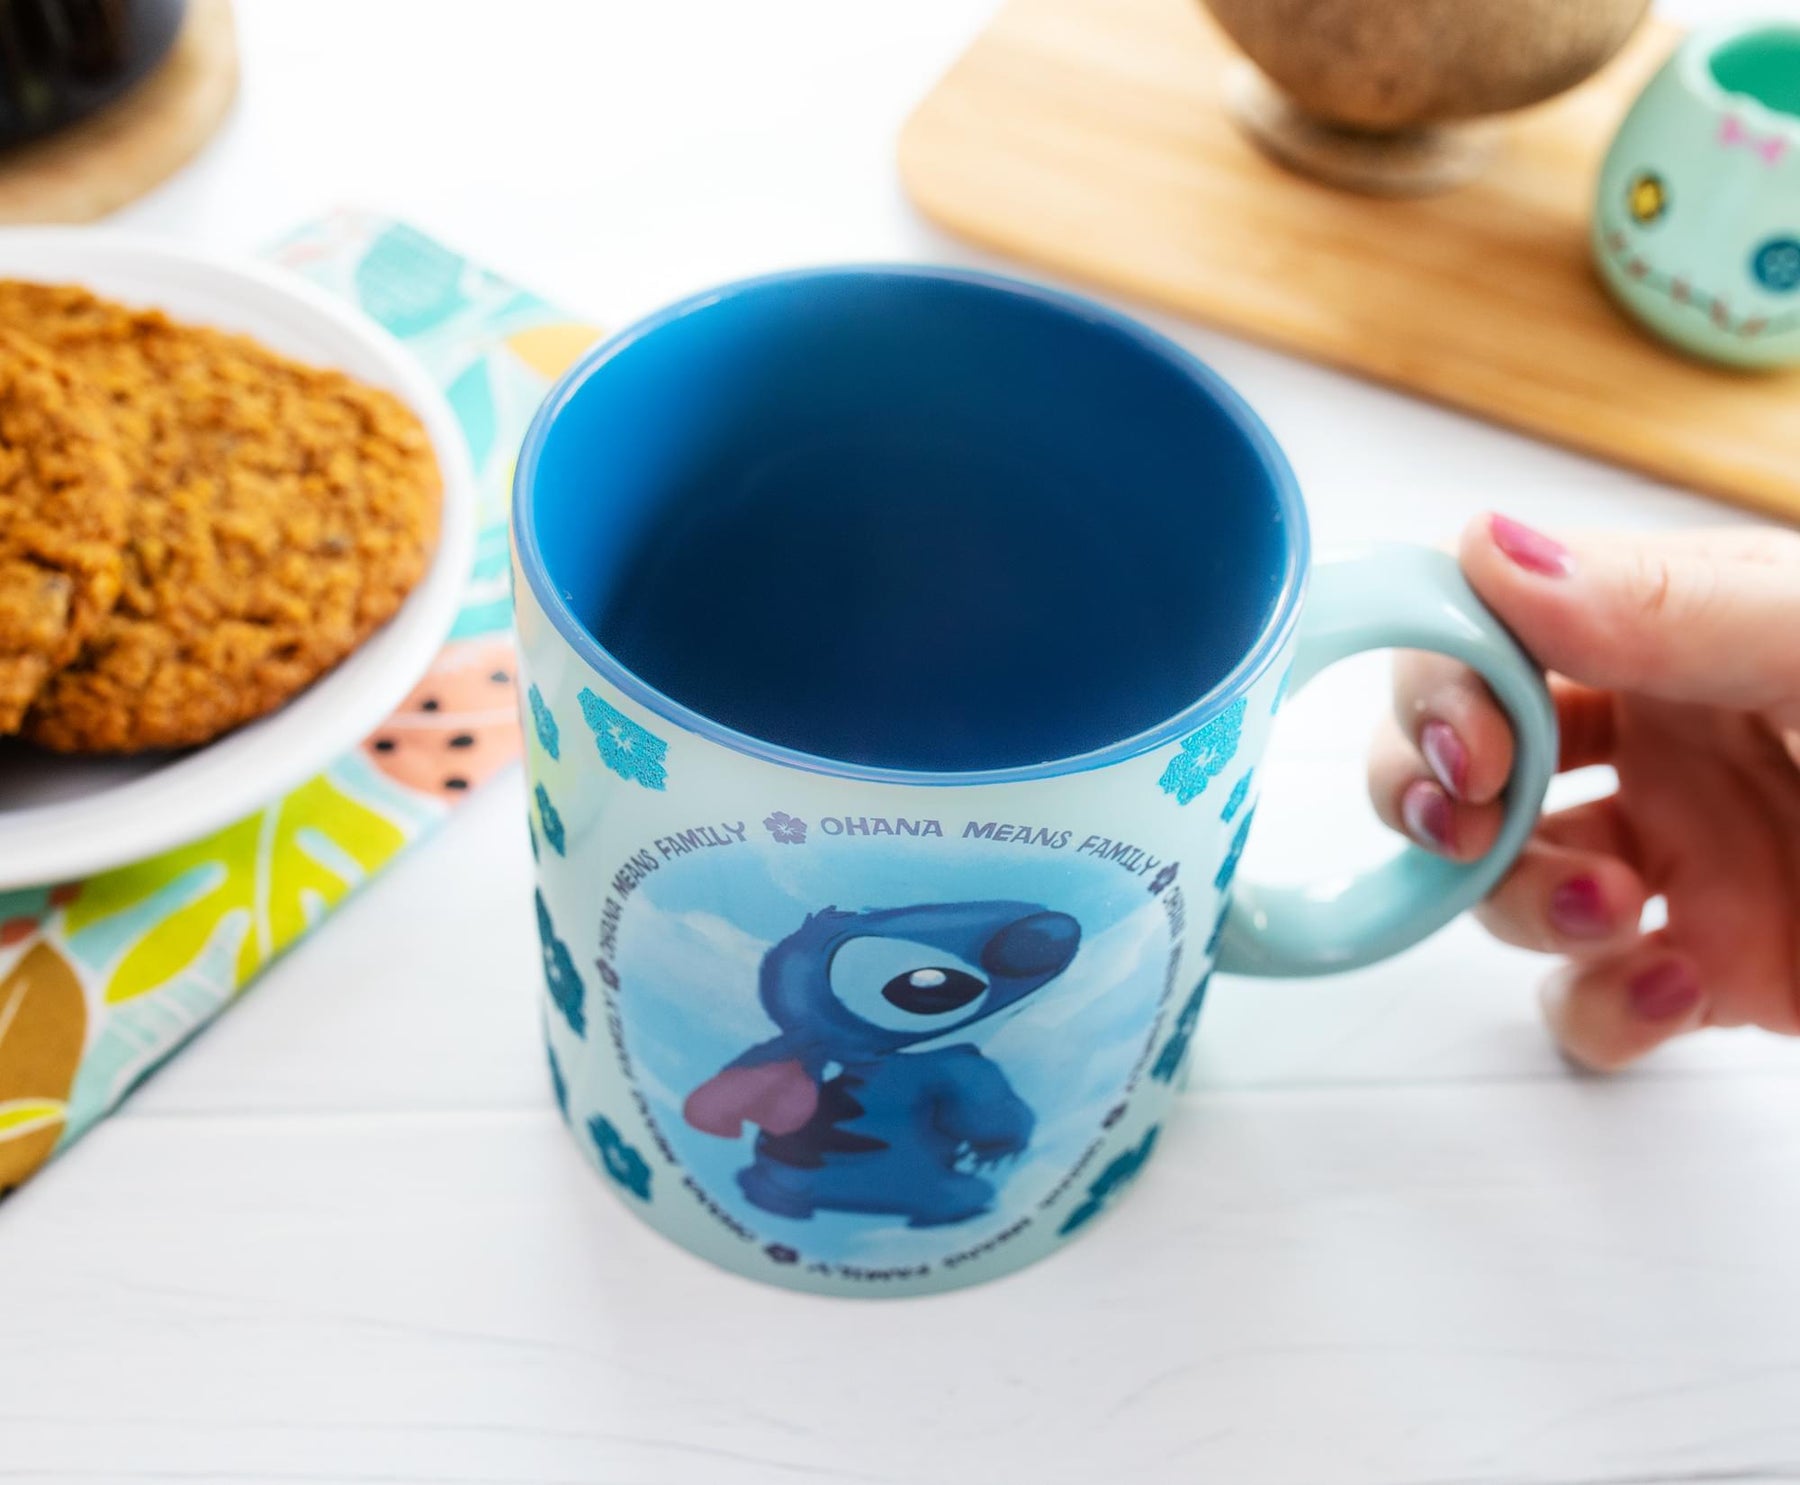 Disney Lilo & Stitch "Ohana Means Family" Ceramic Mug | Holds 20 Ounces